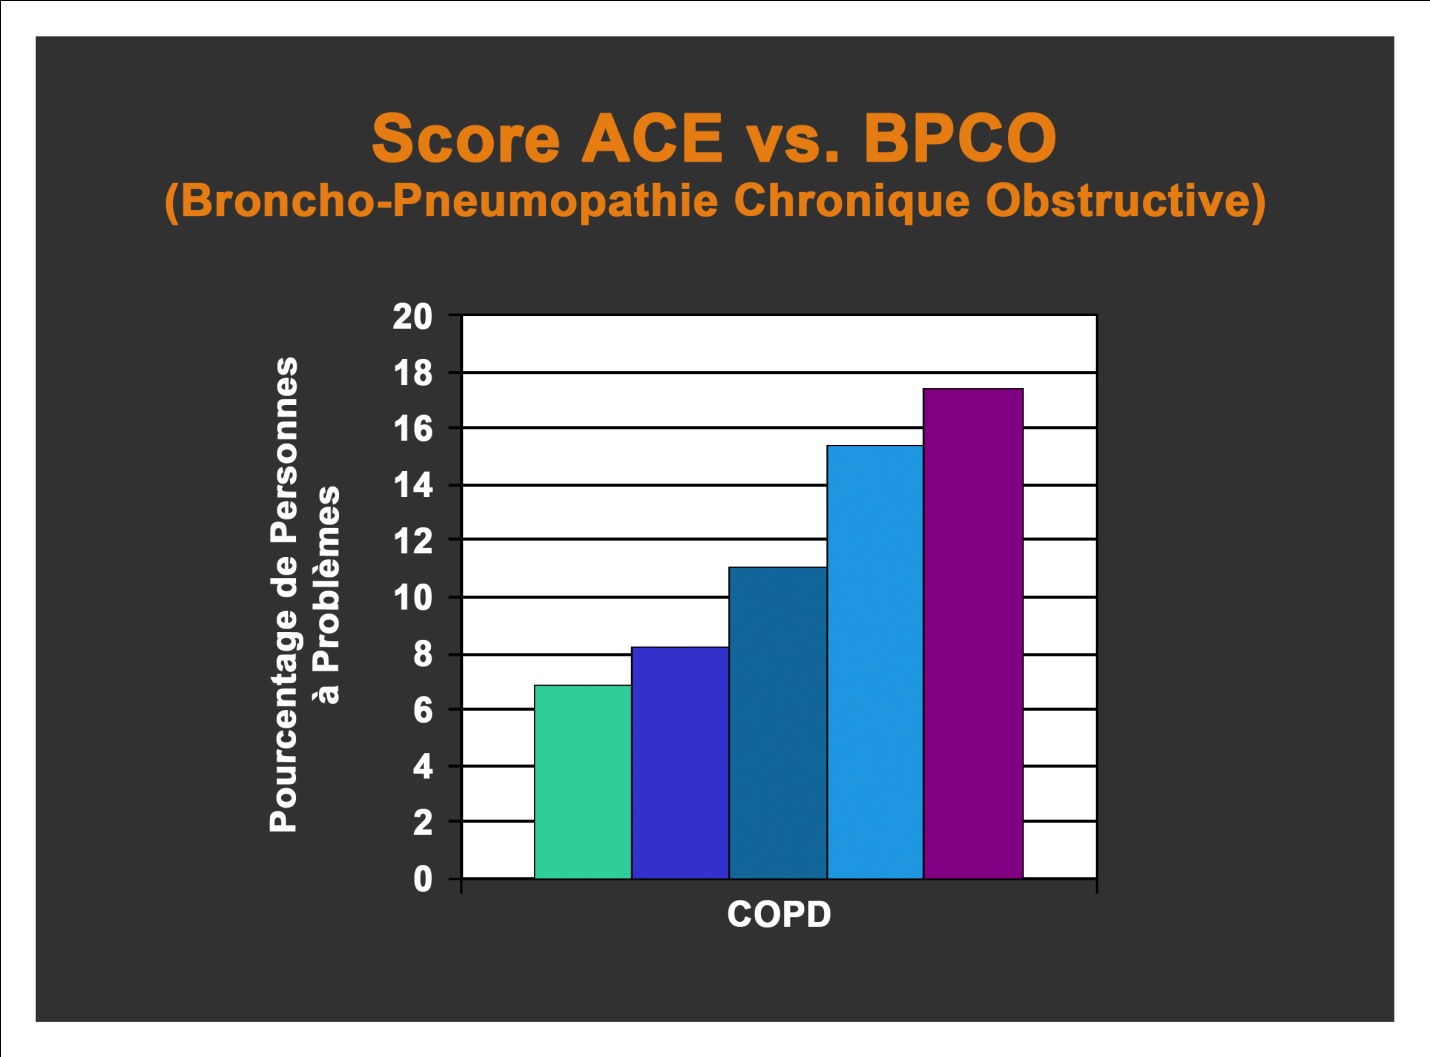 Score ACE vs BPCO (Broncho-Pneumopathie Chronique Obstructive)